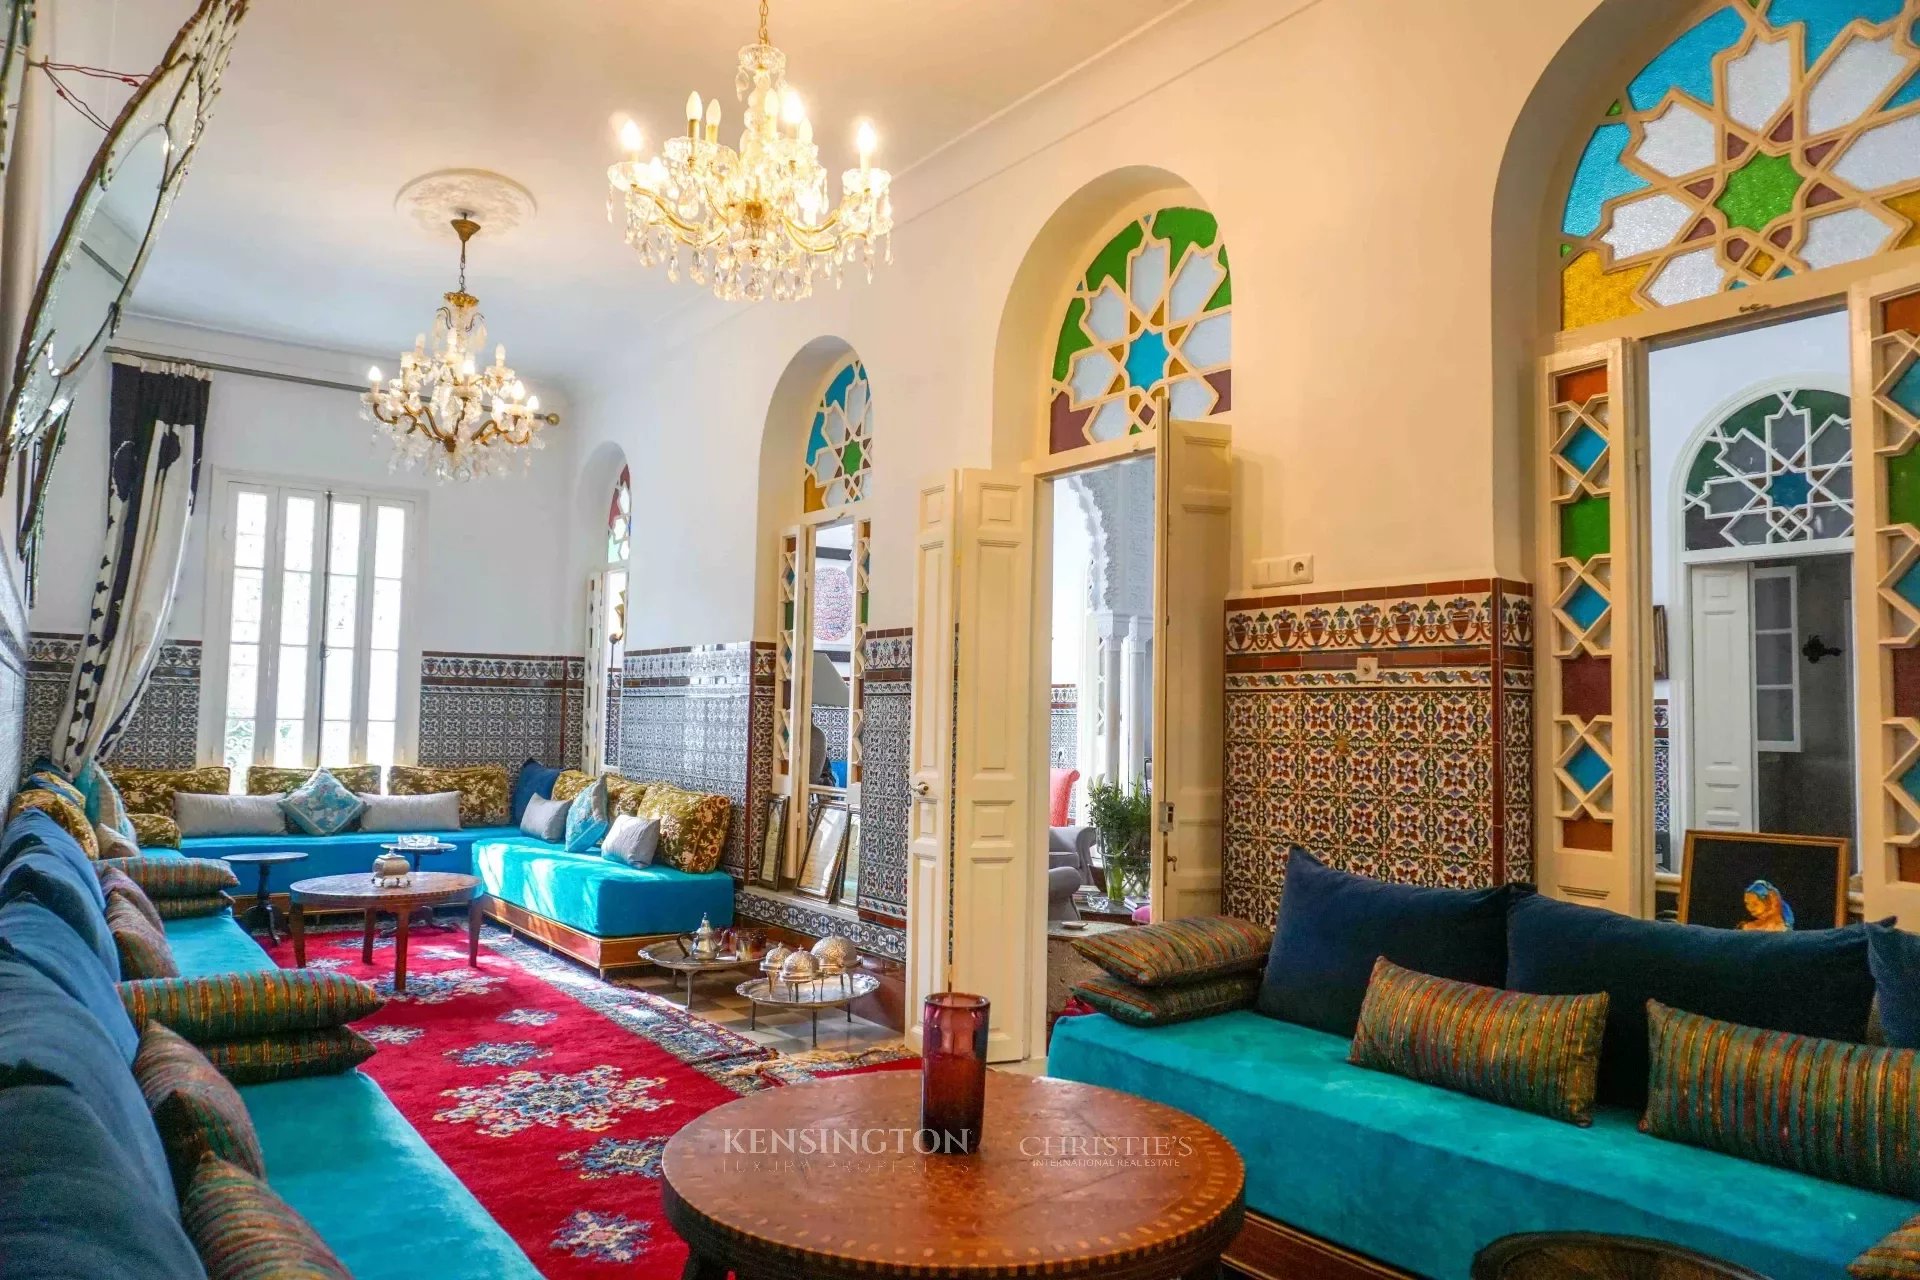 Villa Slama in Tanger, Morocco